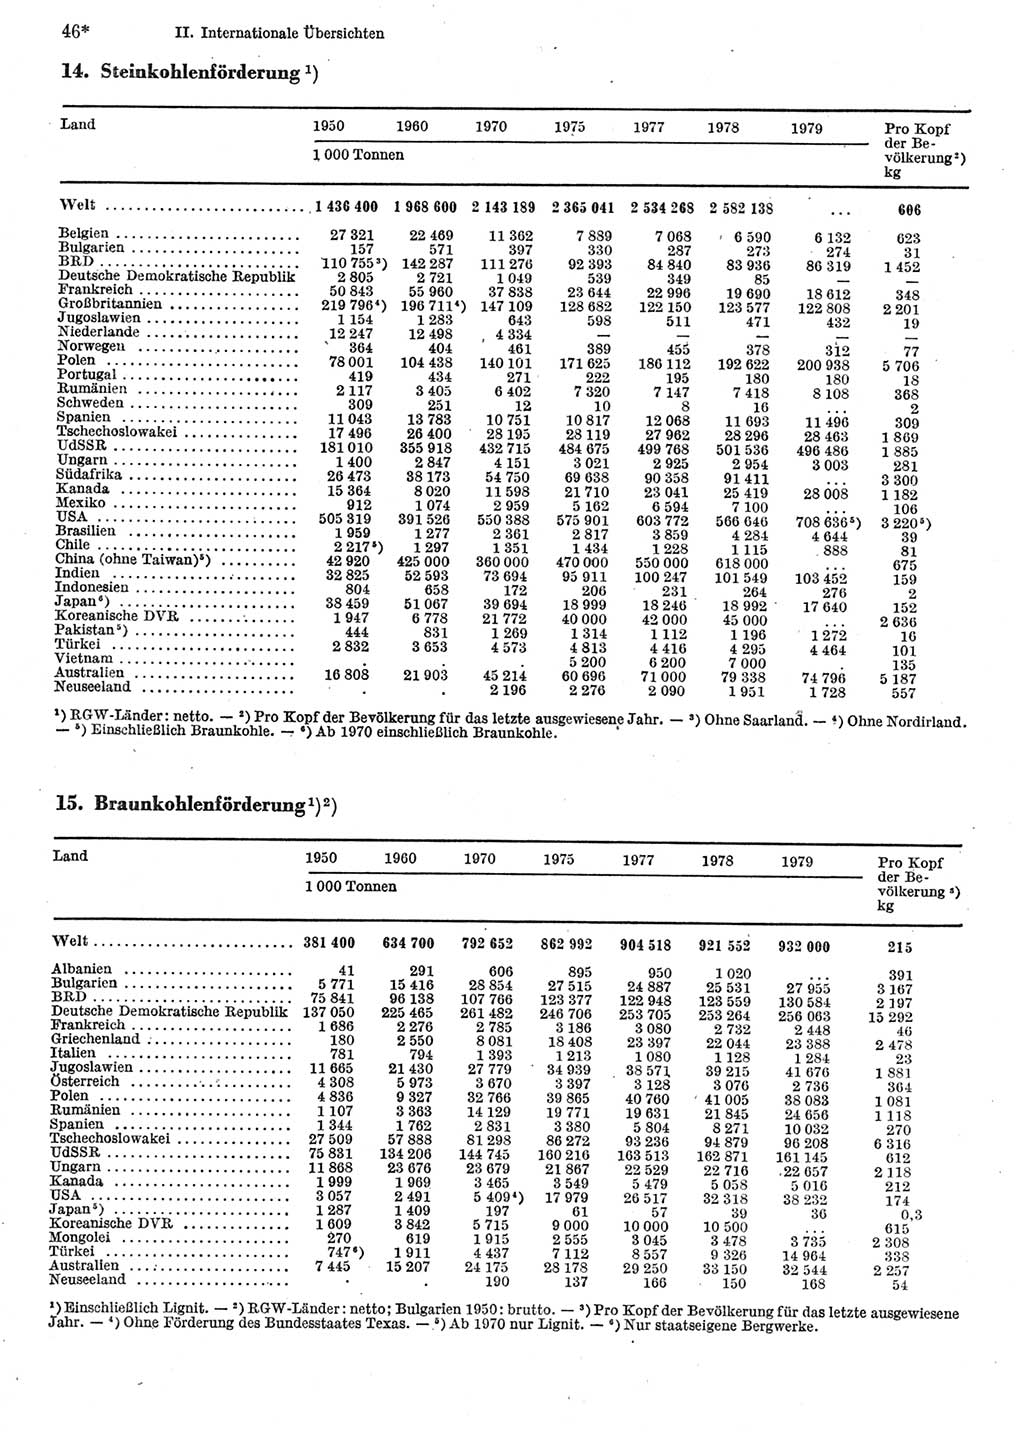 Statistisches Jahrbuch der Deutschen Demokratischen Republik (DDR) 1981, Seite 46 (Stat. Jb. DDR 1981, S. 46)